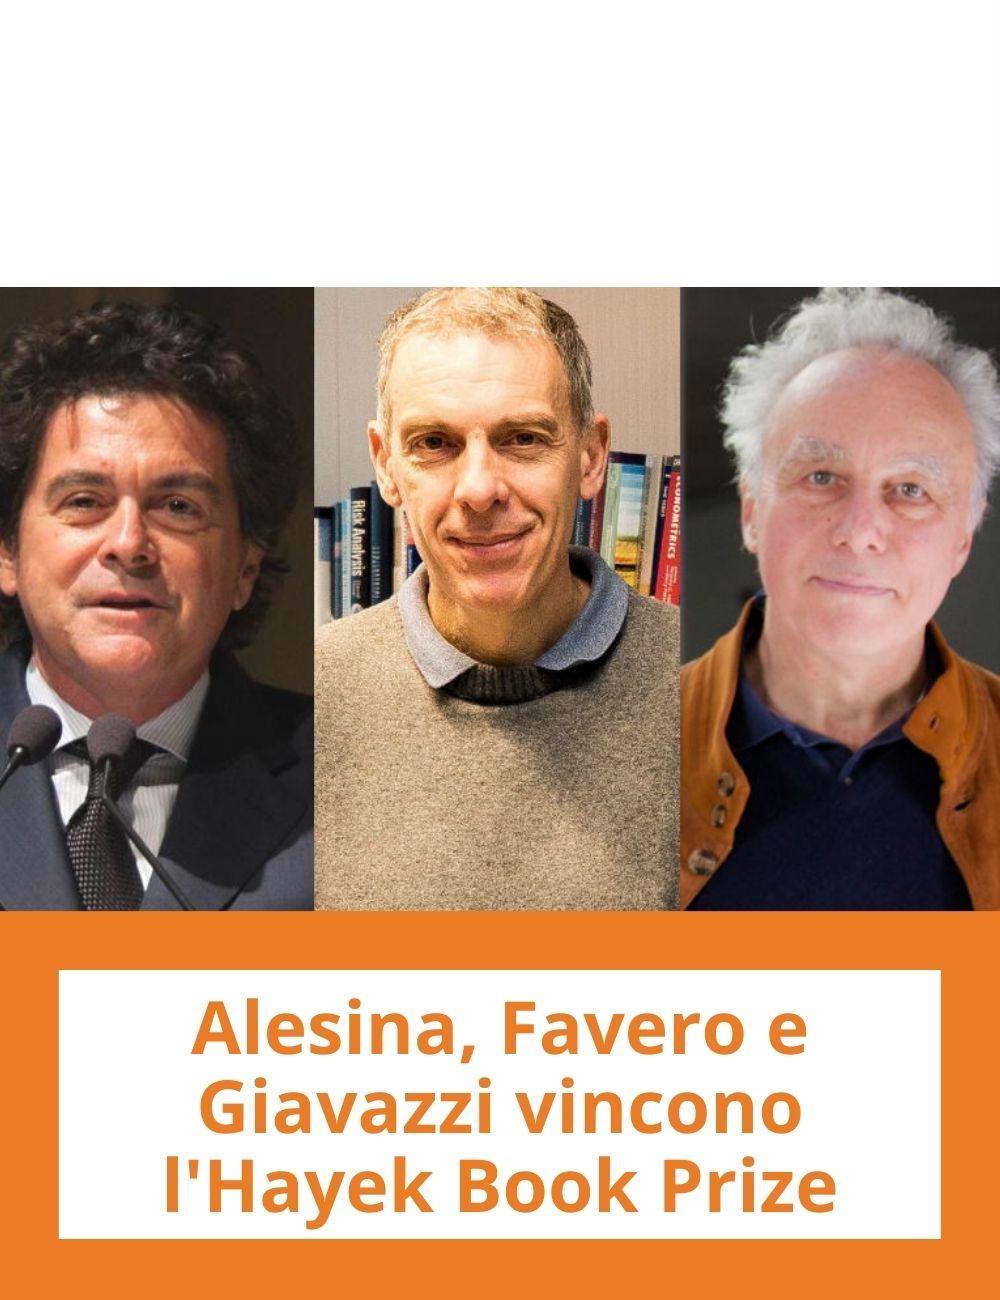 Immagine con link ad articoli su temi simili. L'immagine di Alberto Alesina, Carlo Favero e Francesco Giavazzi rimanda all'articolo intitolato: Alesina, Favero e Giavazzi vincono l'Hayek Book Prize